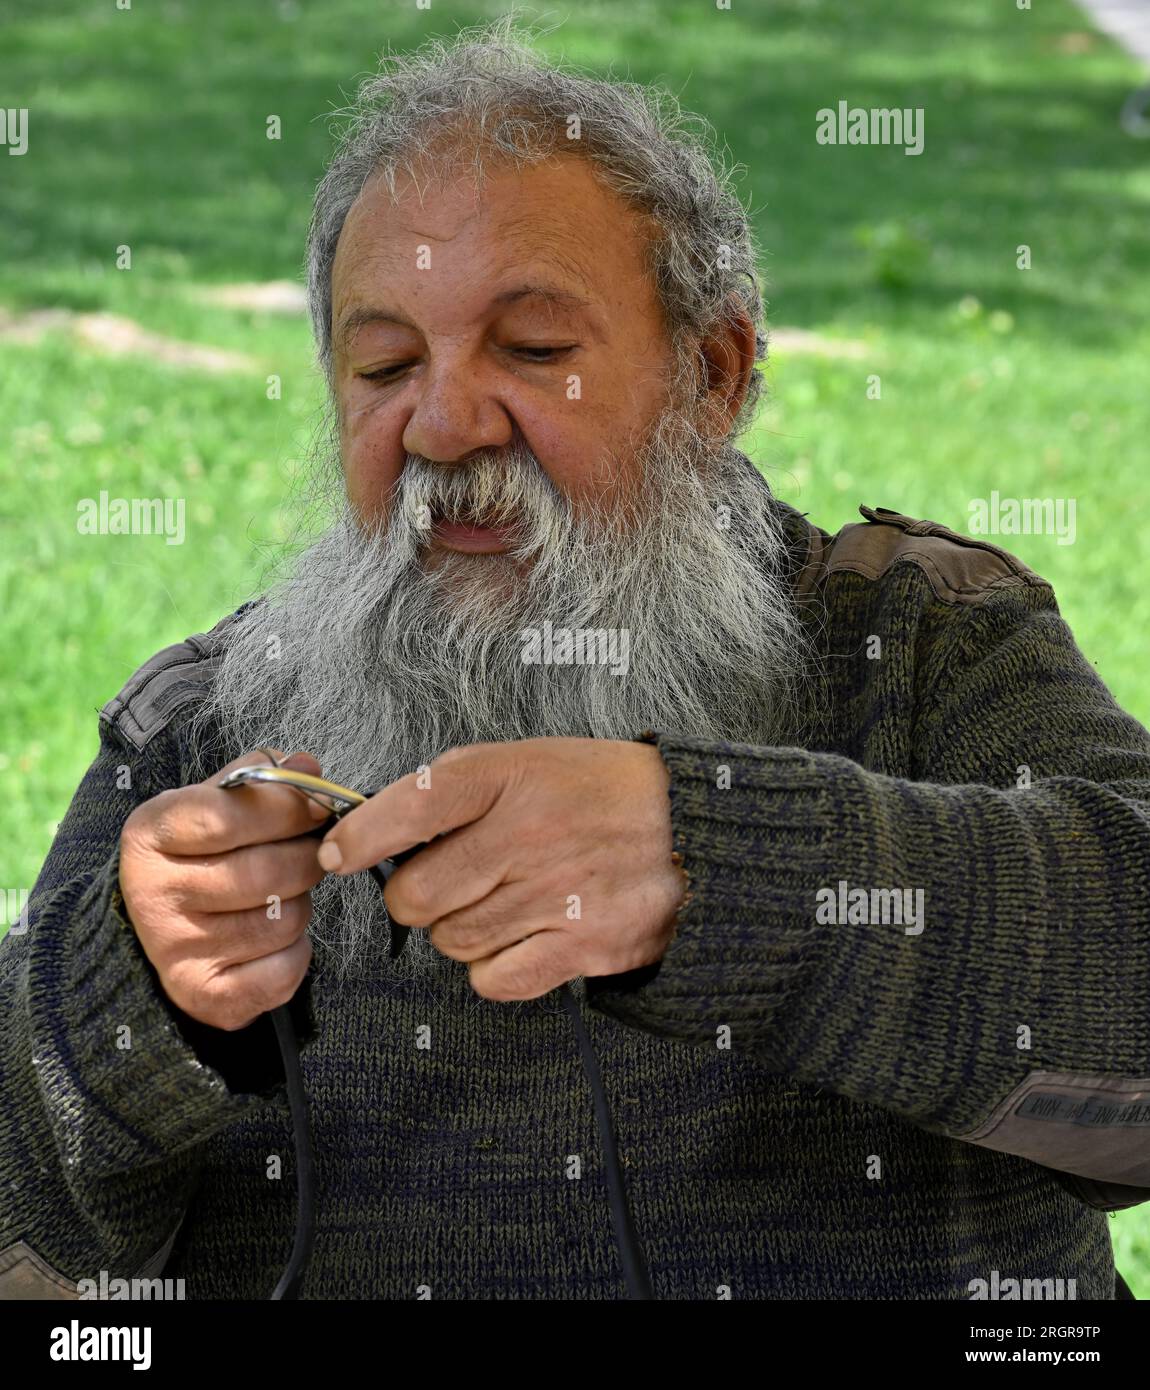 Ritratto di un uomo portoghese più anziano con la barba grigia che guarda l'oggetto che tiene in mano Foto Stock